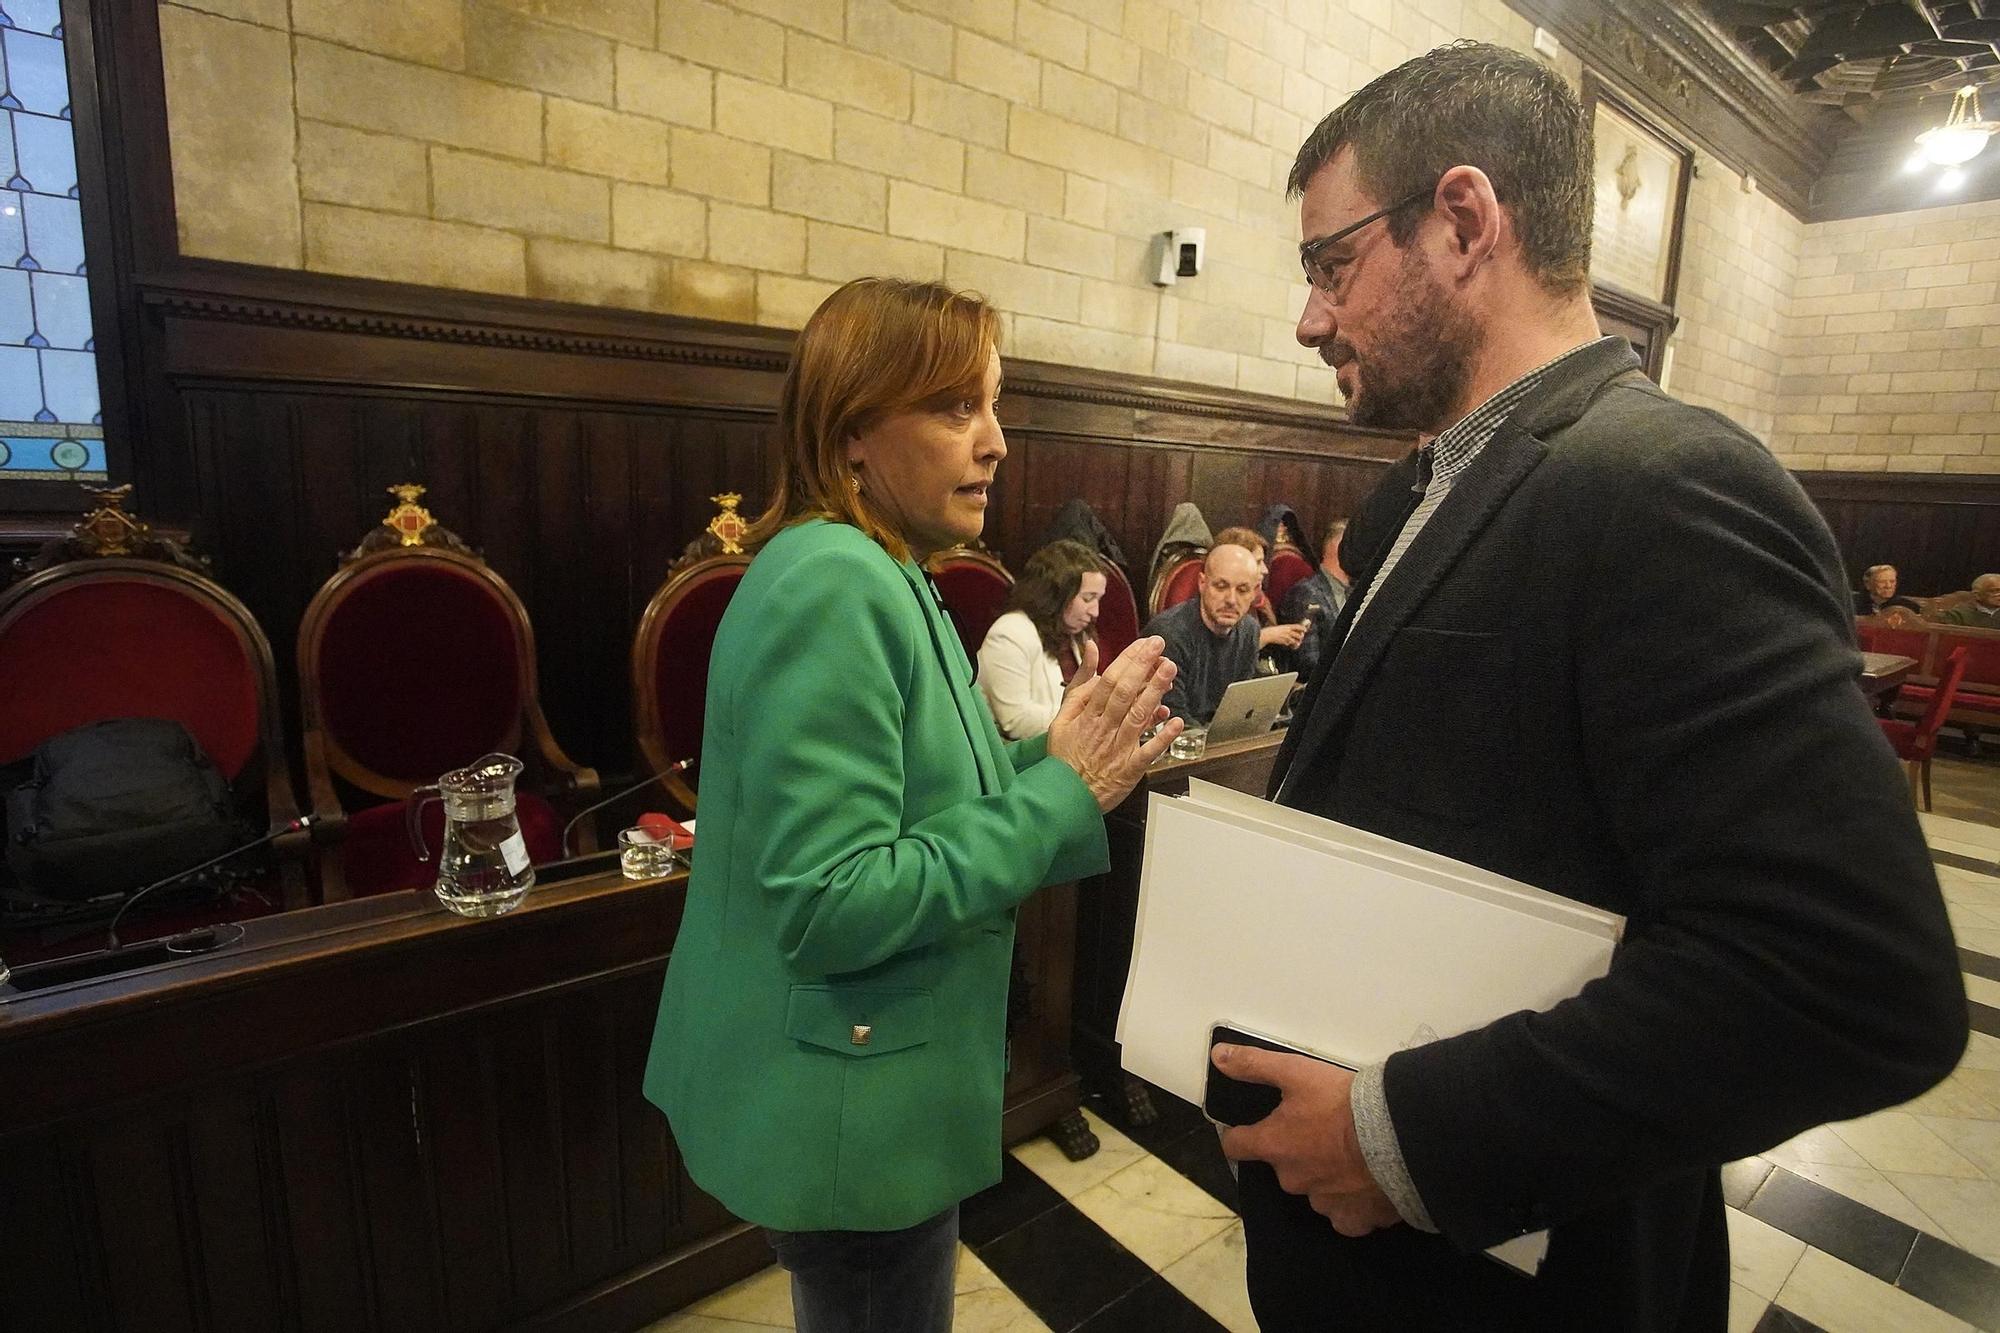 La policia bateja l'alcalde de Girona com a Lluc I el decretador